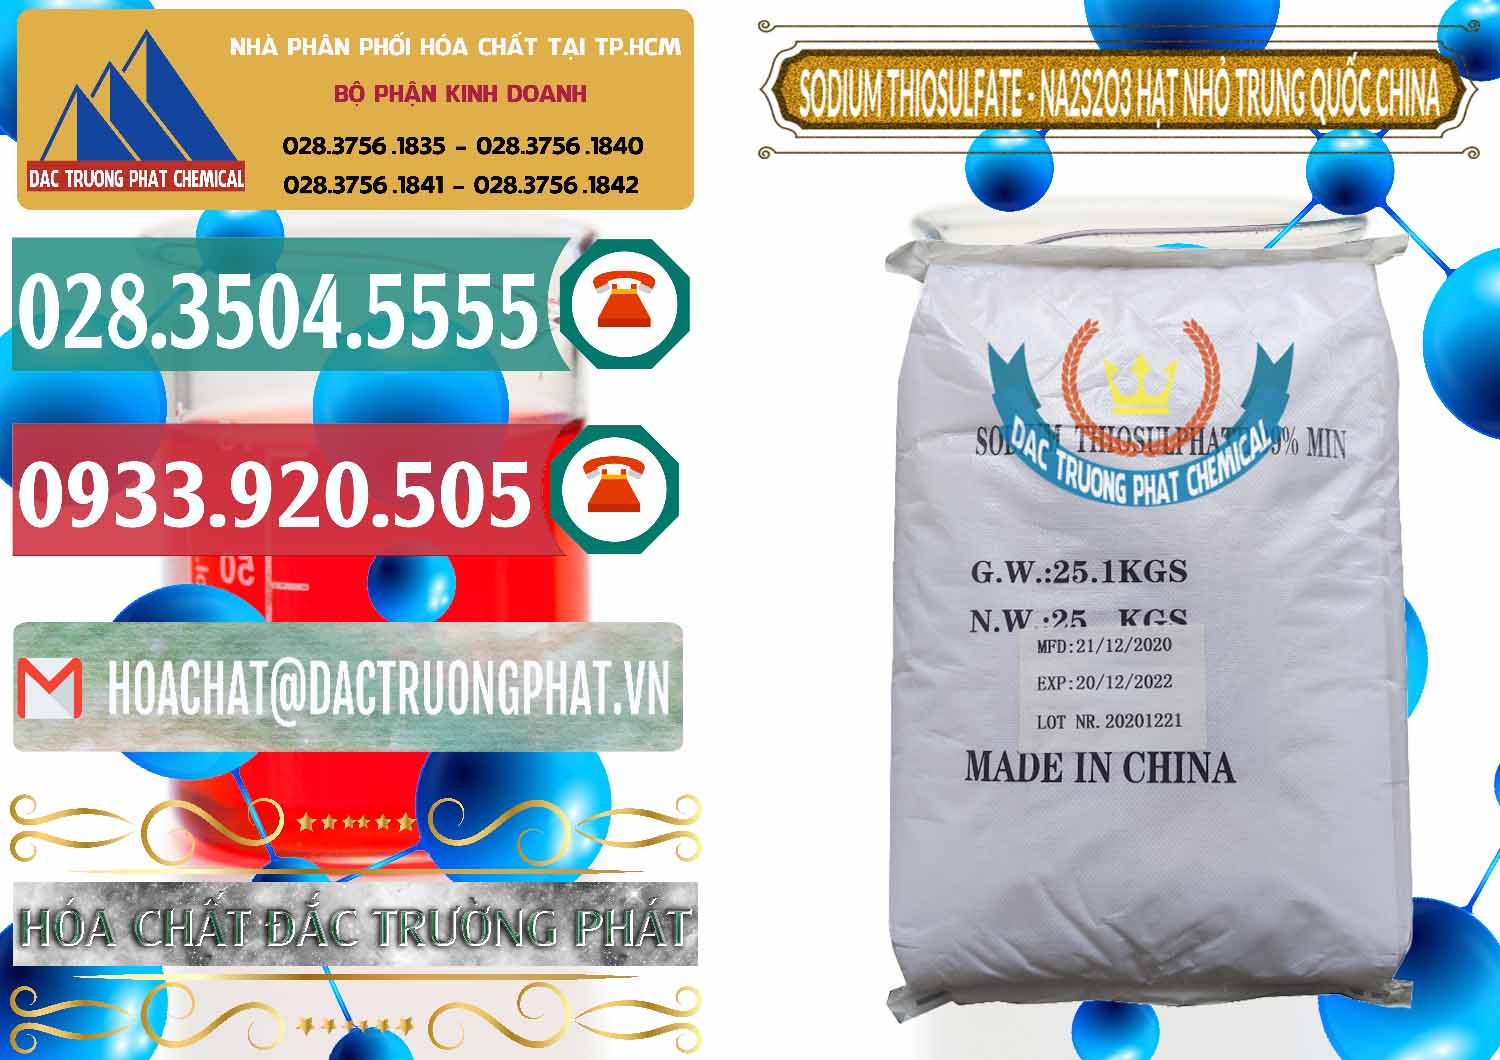 Đơn vị bán và cung cấp Sodium Thiosulfate - NA2S2O3 Hạt Nhỏ Trung Quốc China - 0204 - Nơi chuyên phân phối ( nhập khẩu ) hóa chất tại TP.HCM - muabanhoachat.vn